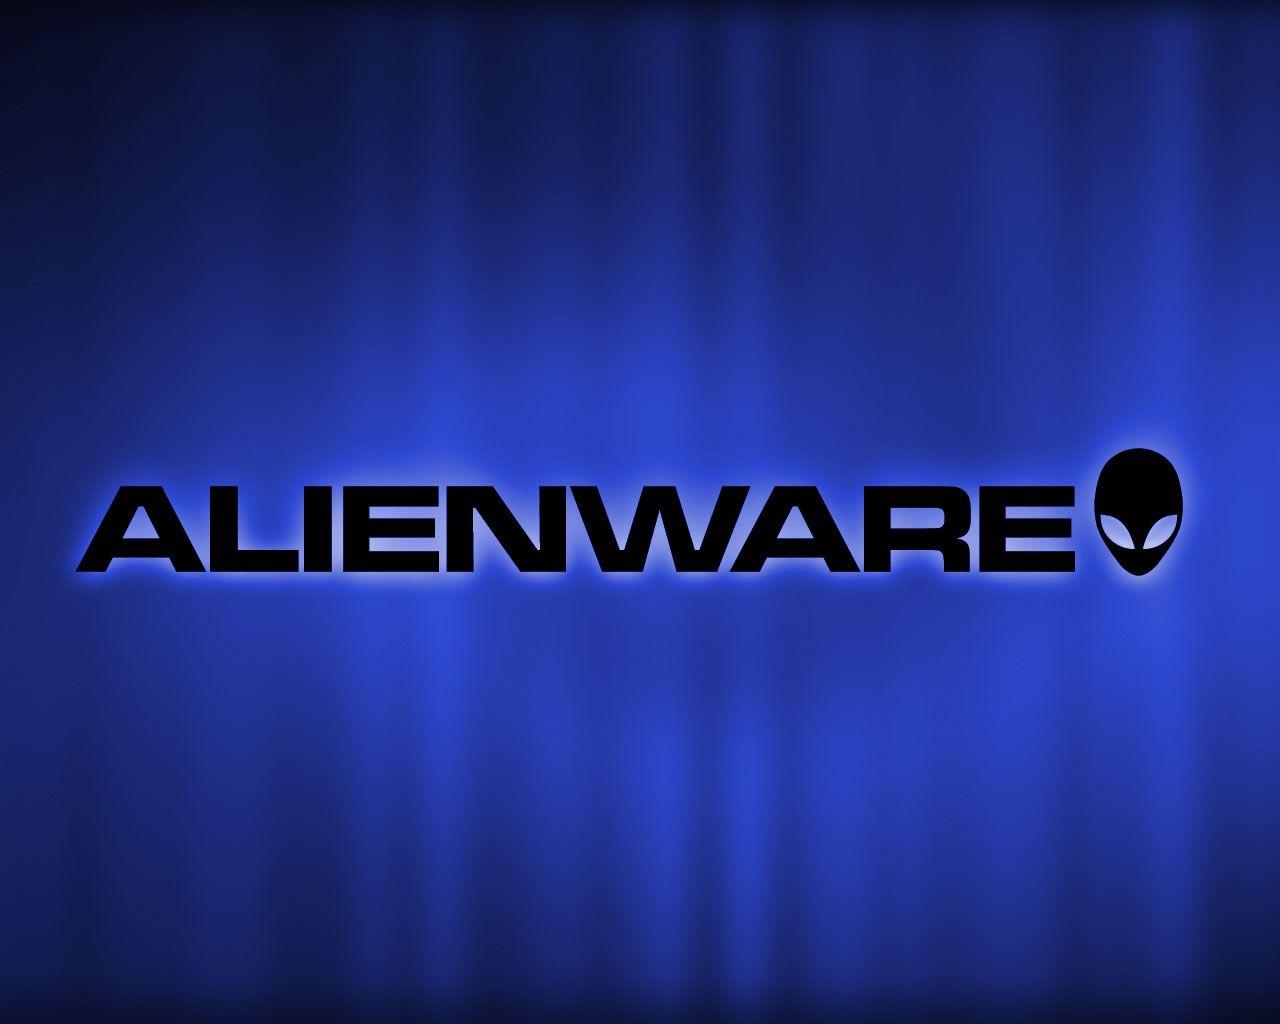 window 7 alienware blue 32 bit